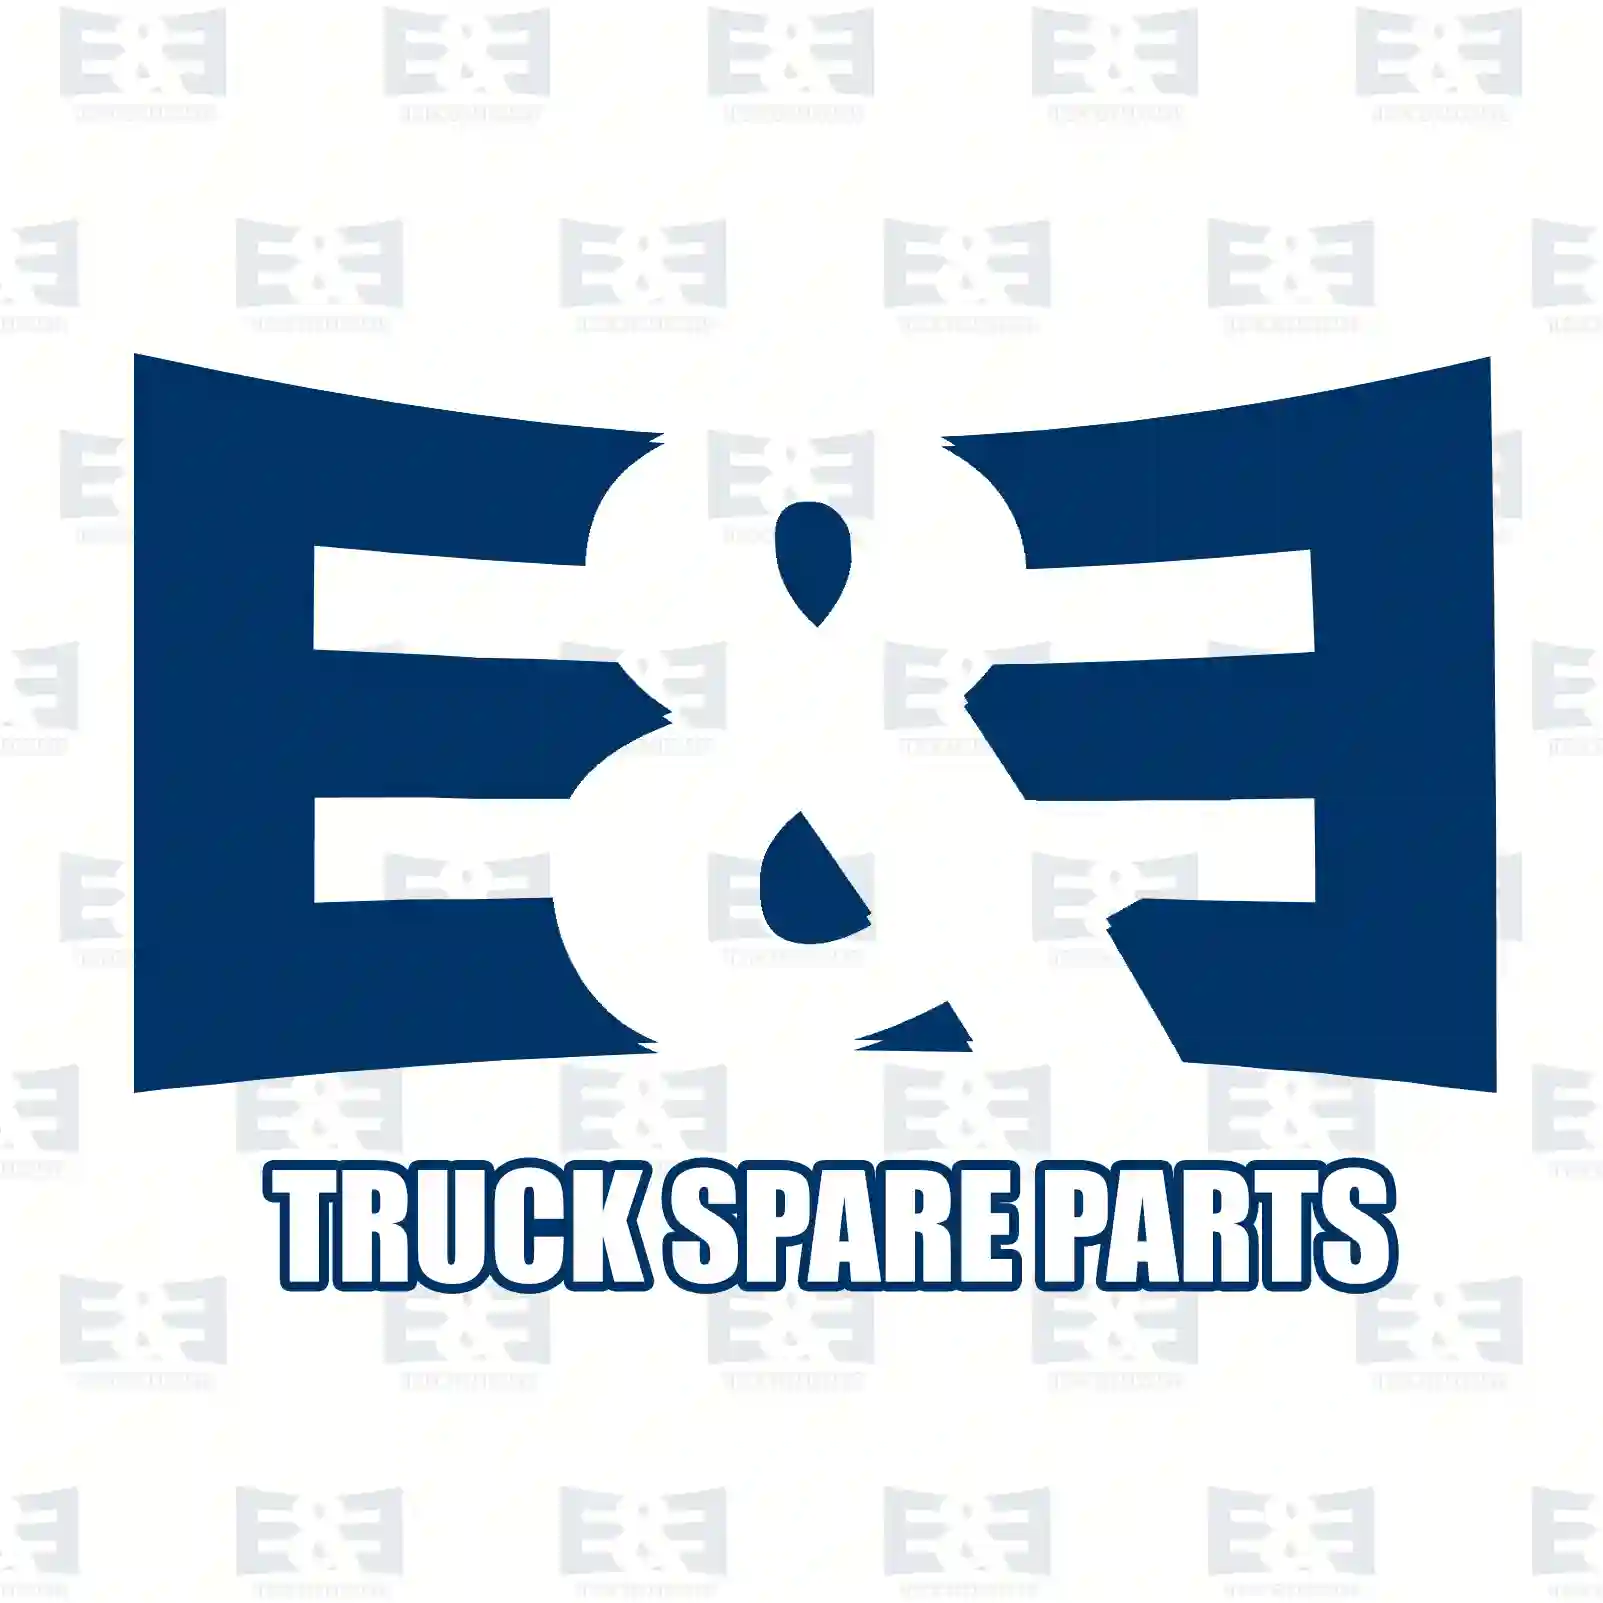 Rubber bushing, 2E2282533, 0693310, 693310, 1134962, 308852 ||  2E2282533 E&E Truck Spare Parts | Truck Spare Parts, Auotomotive Spare Parts Rubber bushing, 2E2282533, 0693310, 693310, 1134962, 308852 ||  2E2282533 E&E Truck Spare Parts | Truck Spare Parts, Auotomotive Spare Parts